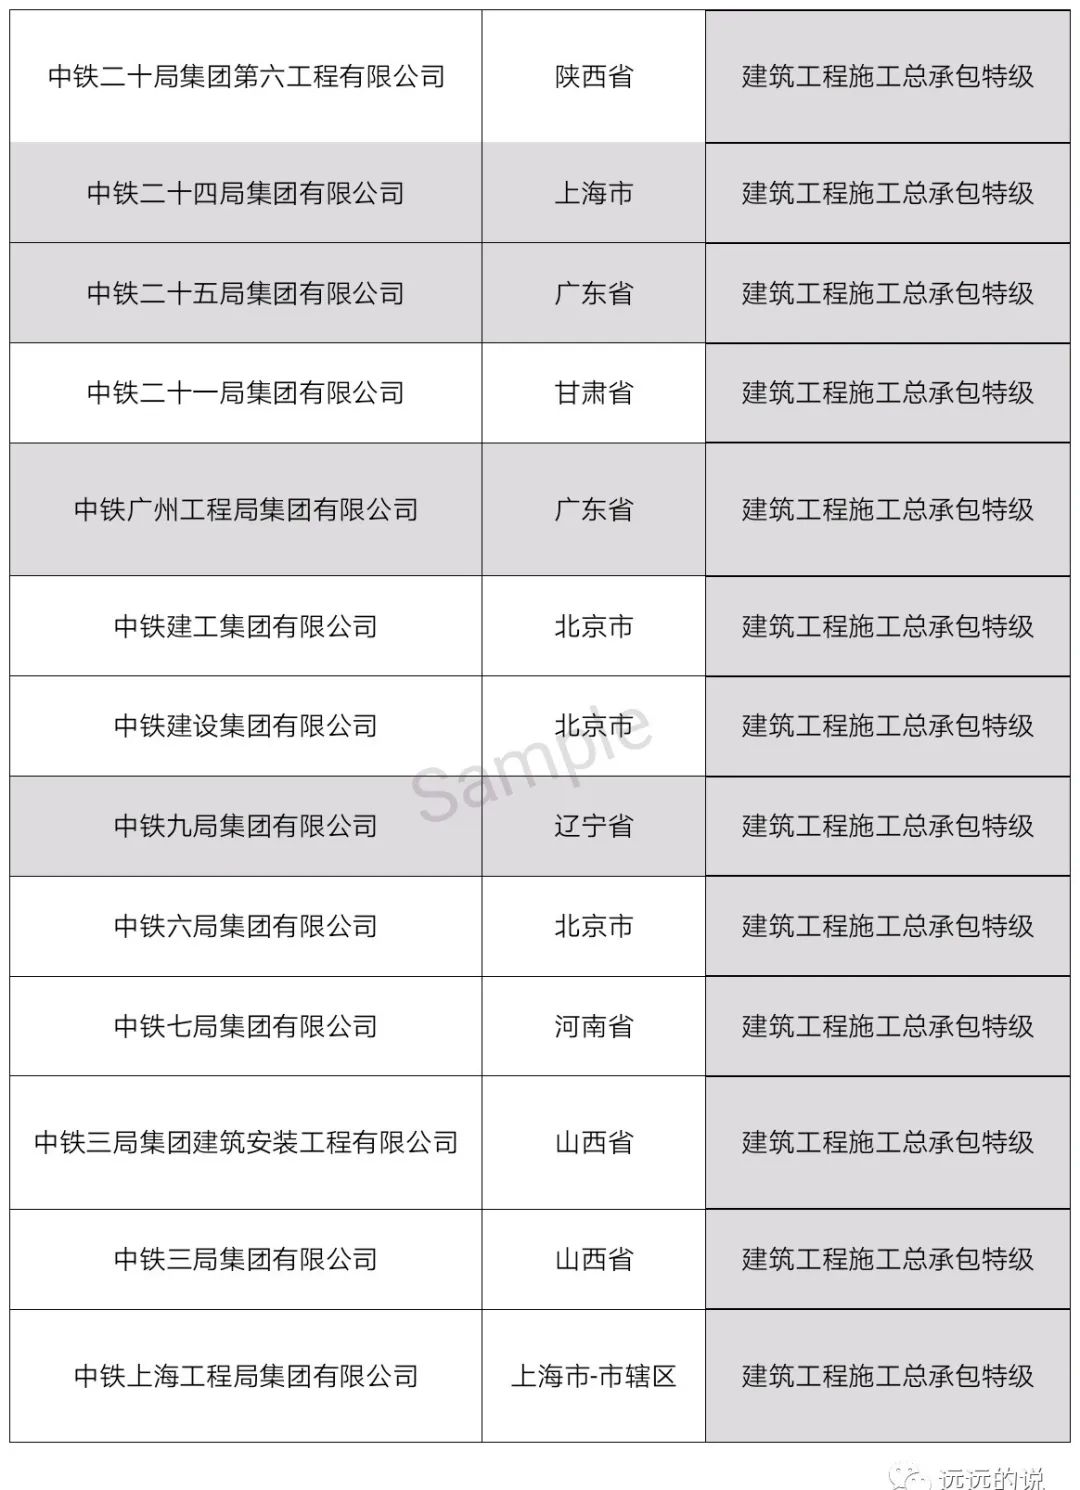 中国特级资质企业名单（最新整理）